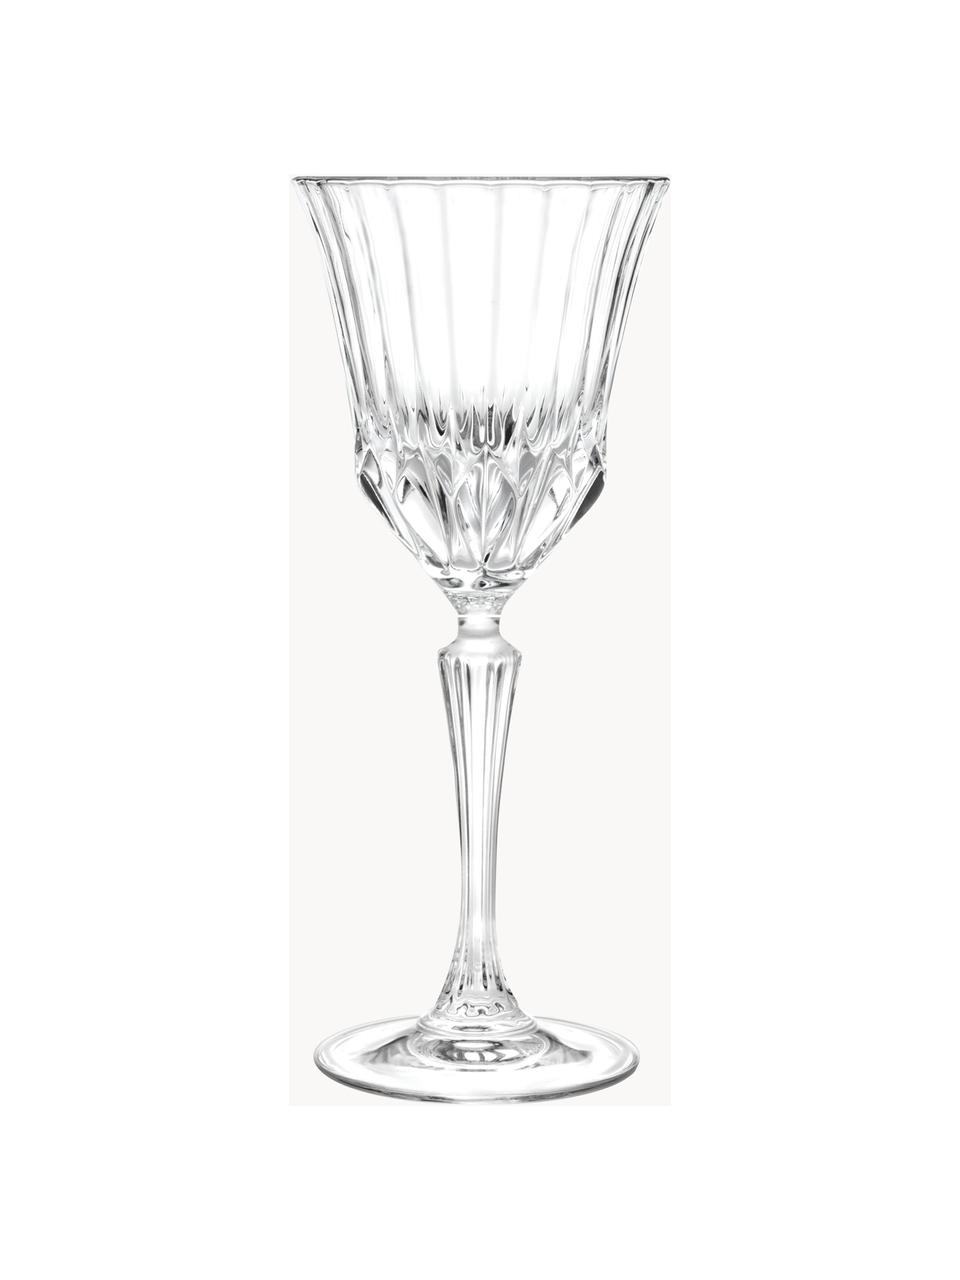 Bicchieri da vino rosso in cristallo Adagio 6 pz, Cristallo Luxion, Trasparente, Ø 9 x Alt. 21 cm, 280 ml